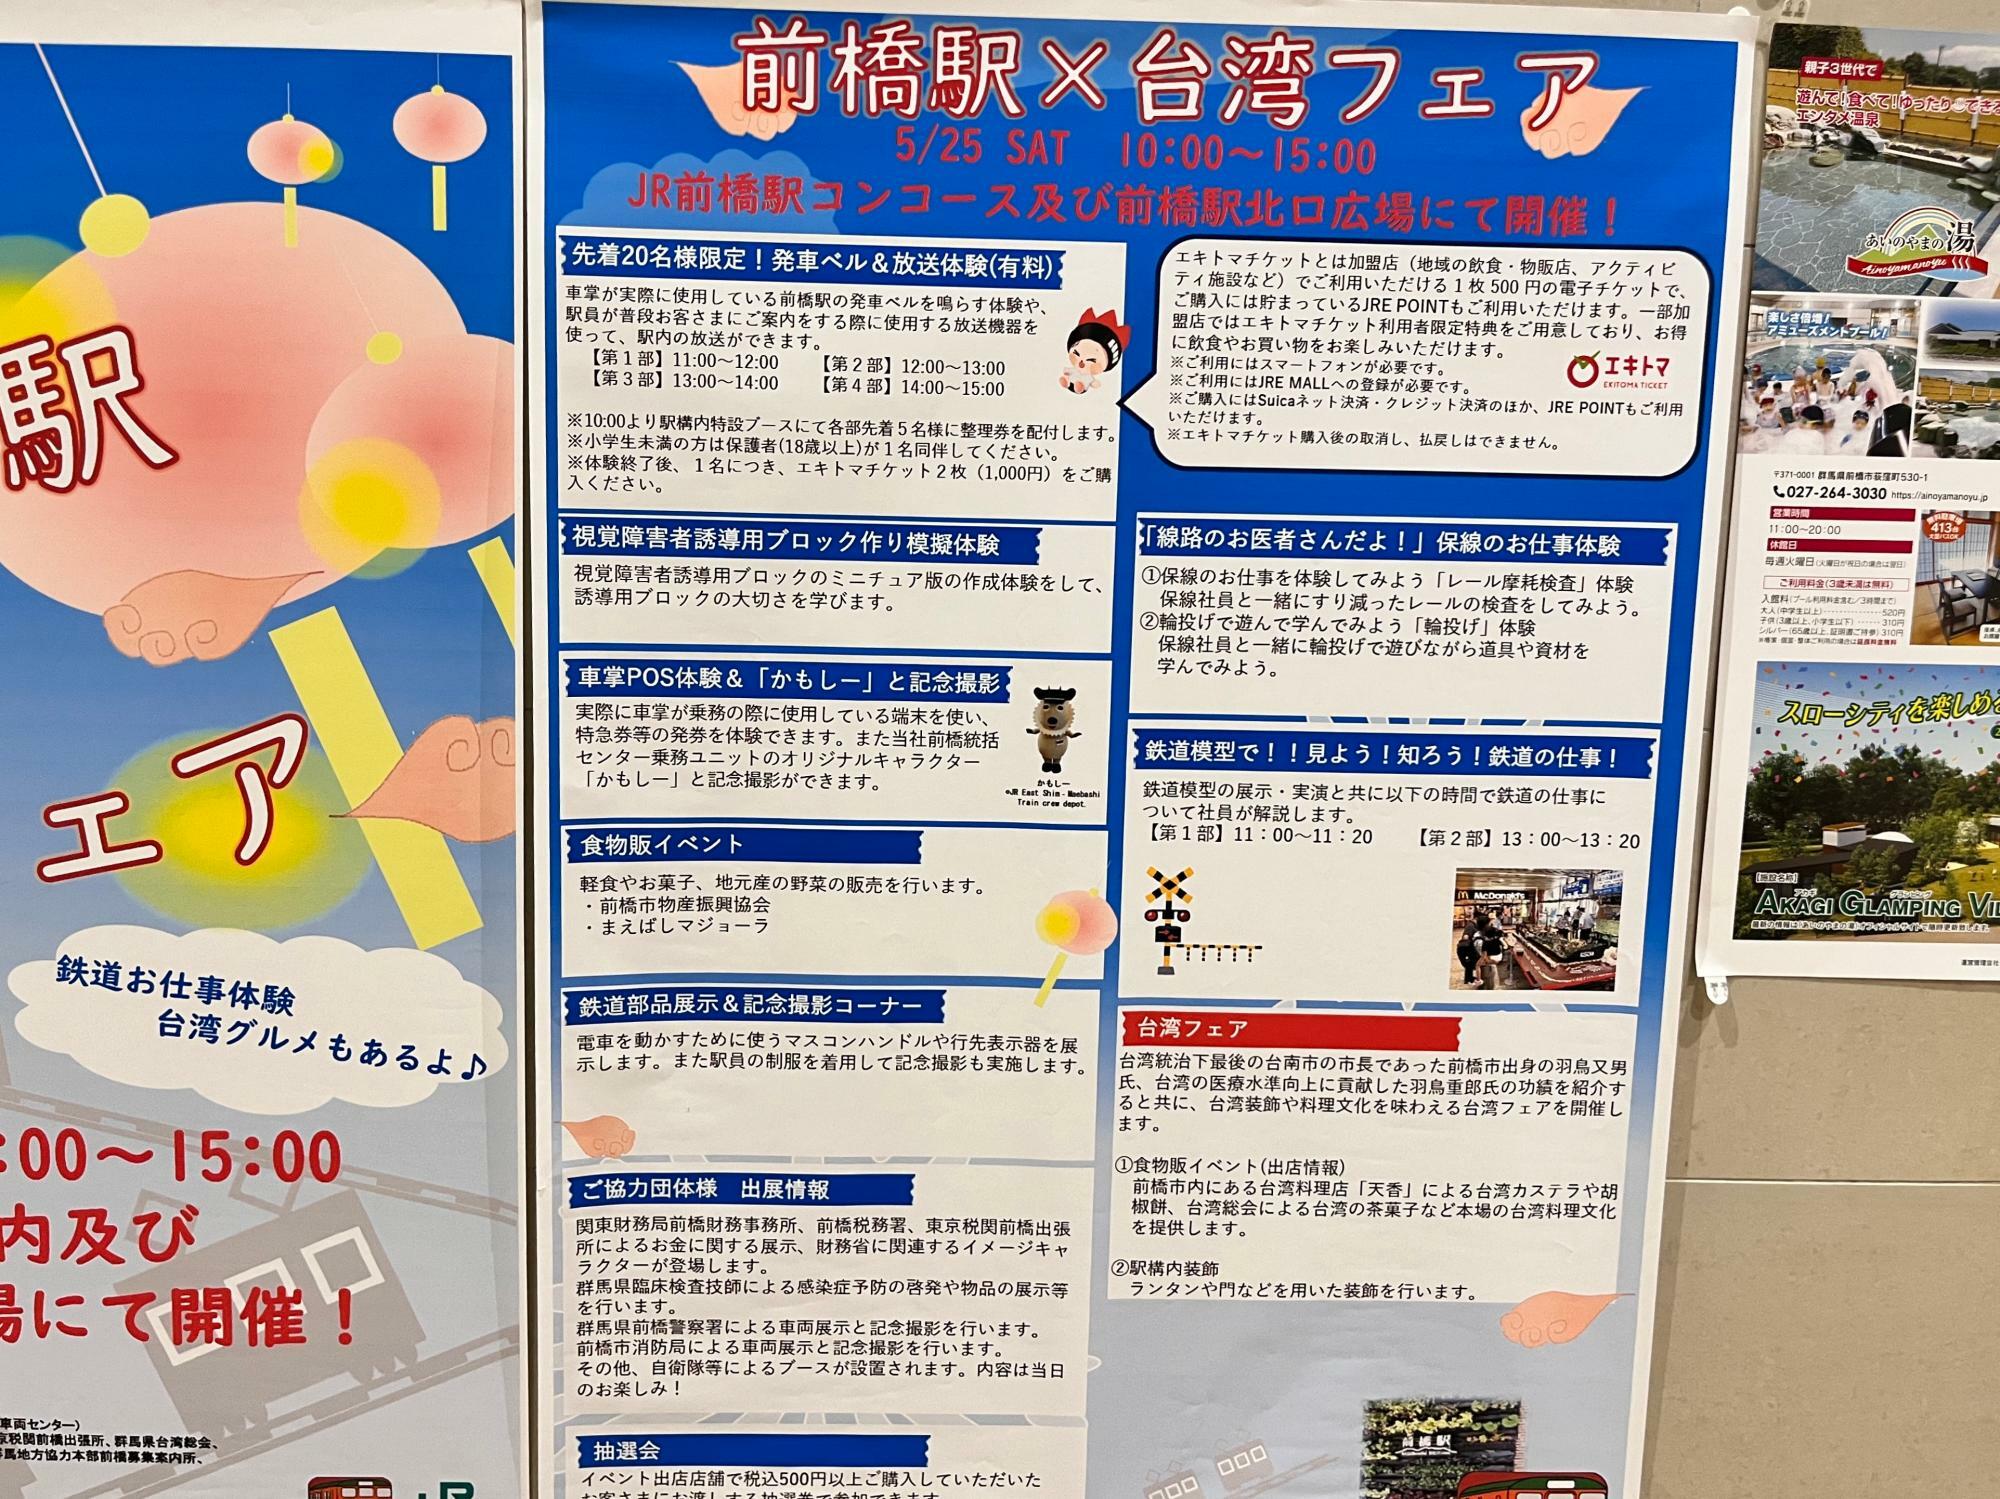 「前橋駅×台湾フェア」イベント内容